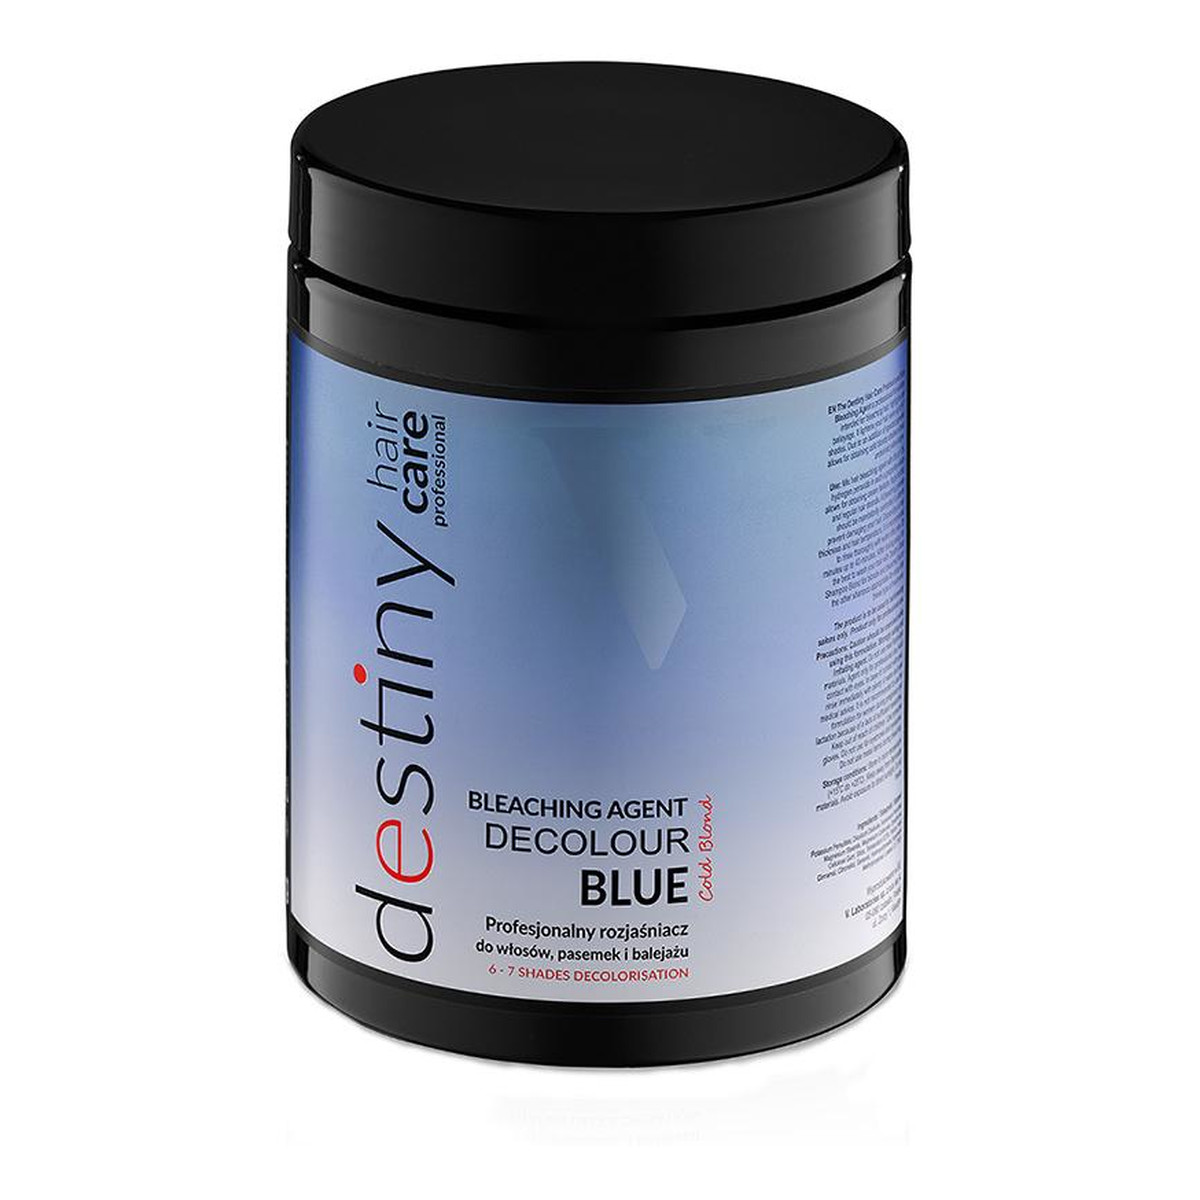 Destivii Destiny decolour blue profesjonalny rozjaśniacz do włosów pasemek i balejażu 500g